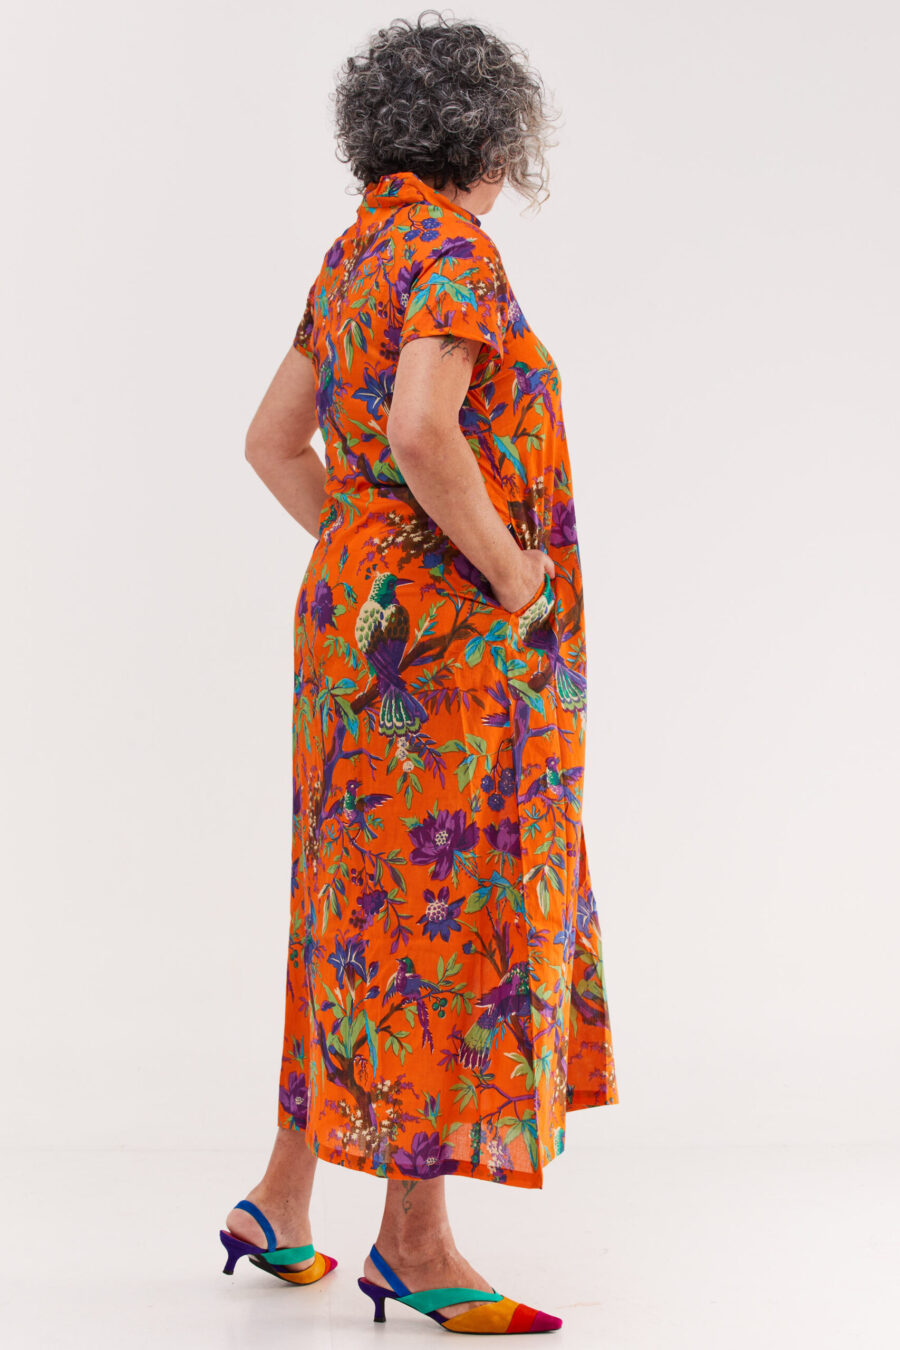 שמלת מאיקו | שמלה יפנית בעלת מפתח בעיצוב ייחודי – פרינט טרופיקנה כתום, הדפס טרופי צבעוני על רקע כתום